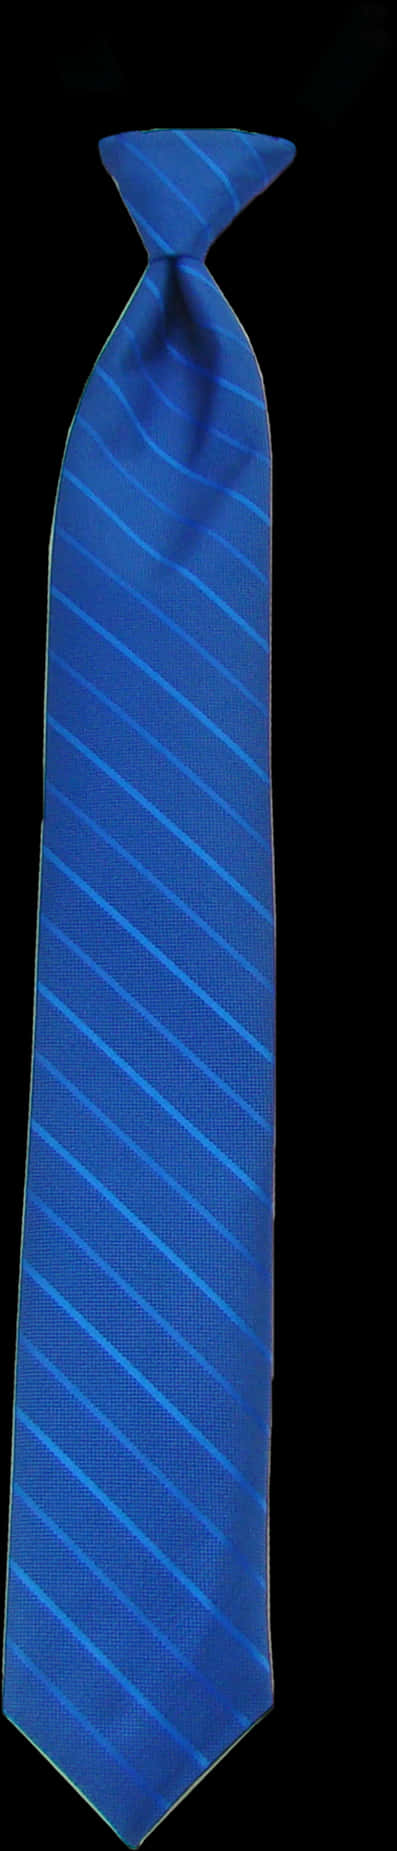 Blue Striped Necktie PNG